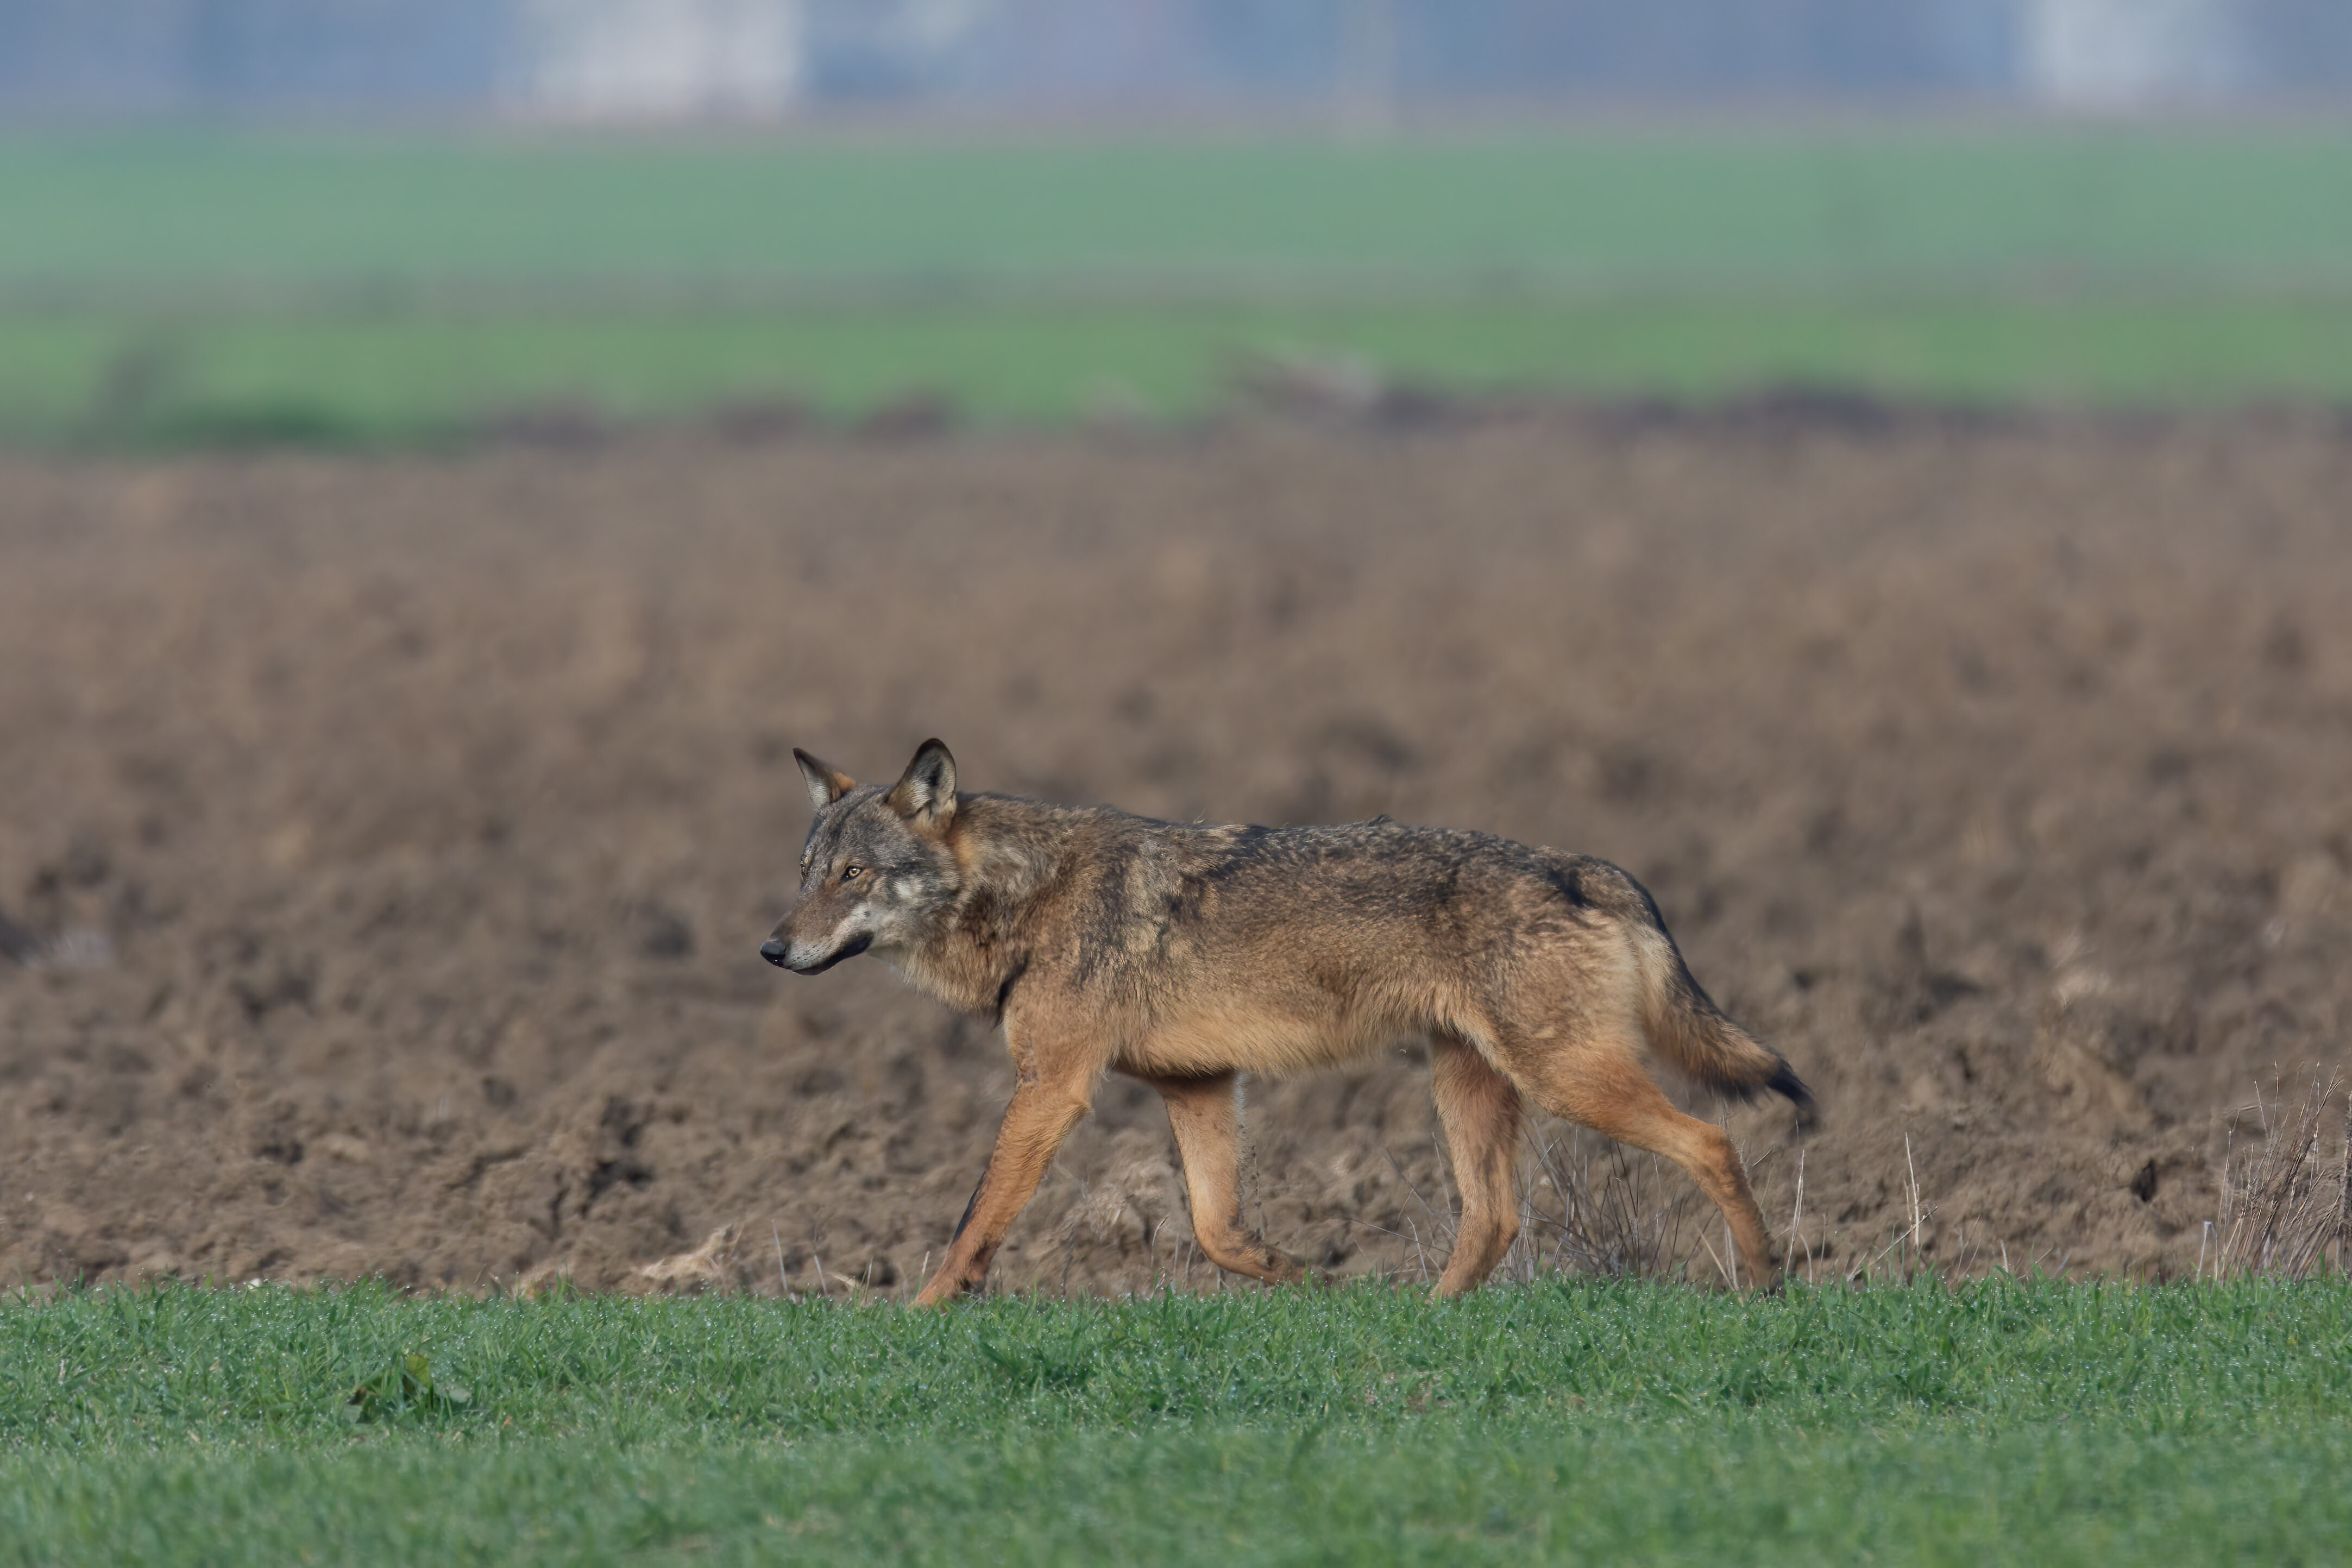 Presenza del lupo in Provincia di Parma e attacchi ai cani da caccia: un allarme sociale inutile e infondato.